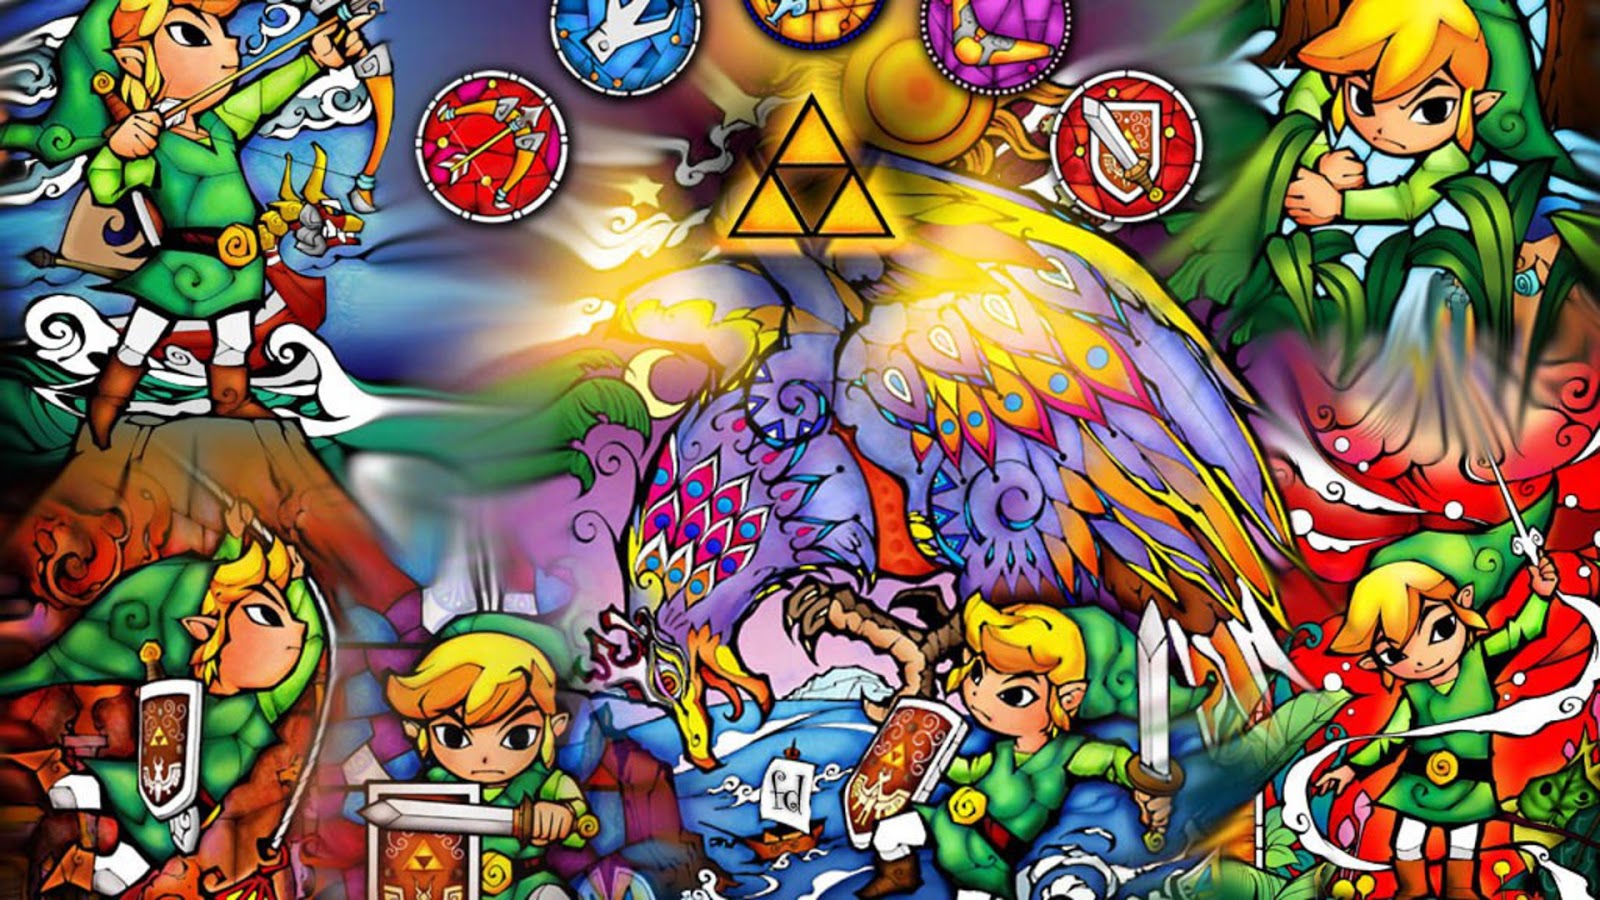 50+ Legend Of Zelda Wallpapers 4k HD (2020) - We 7